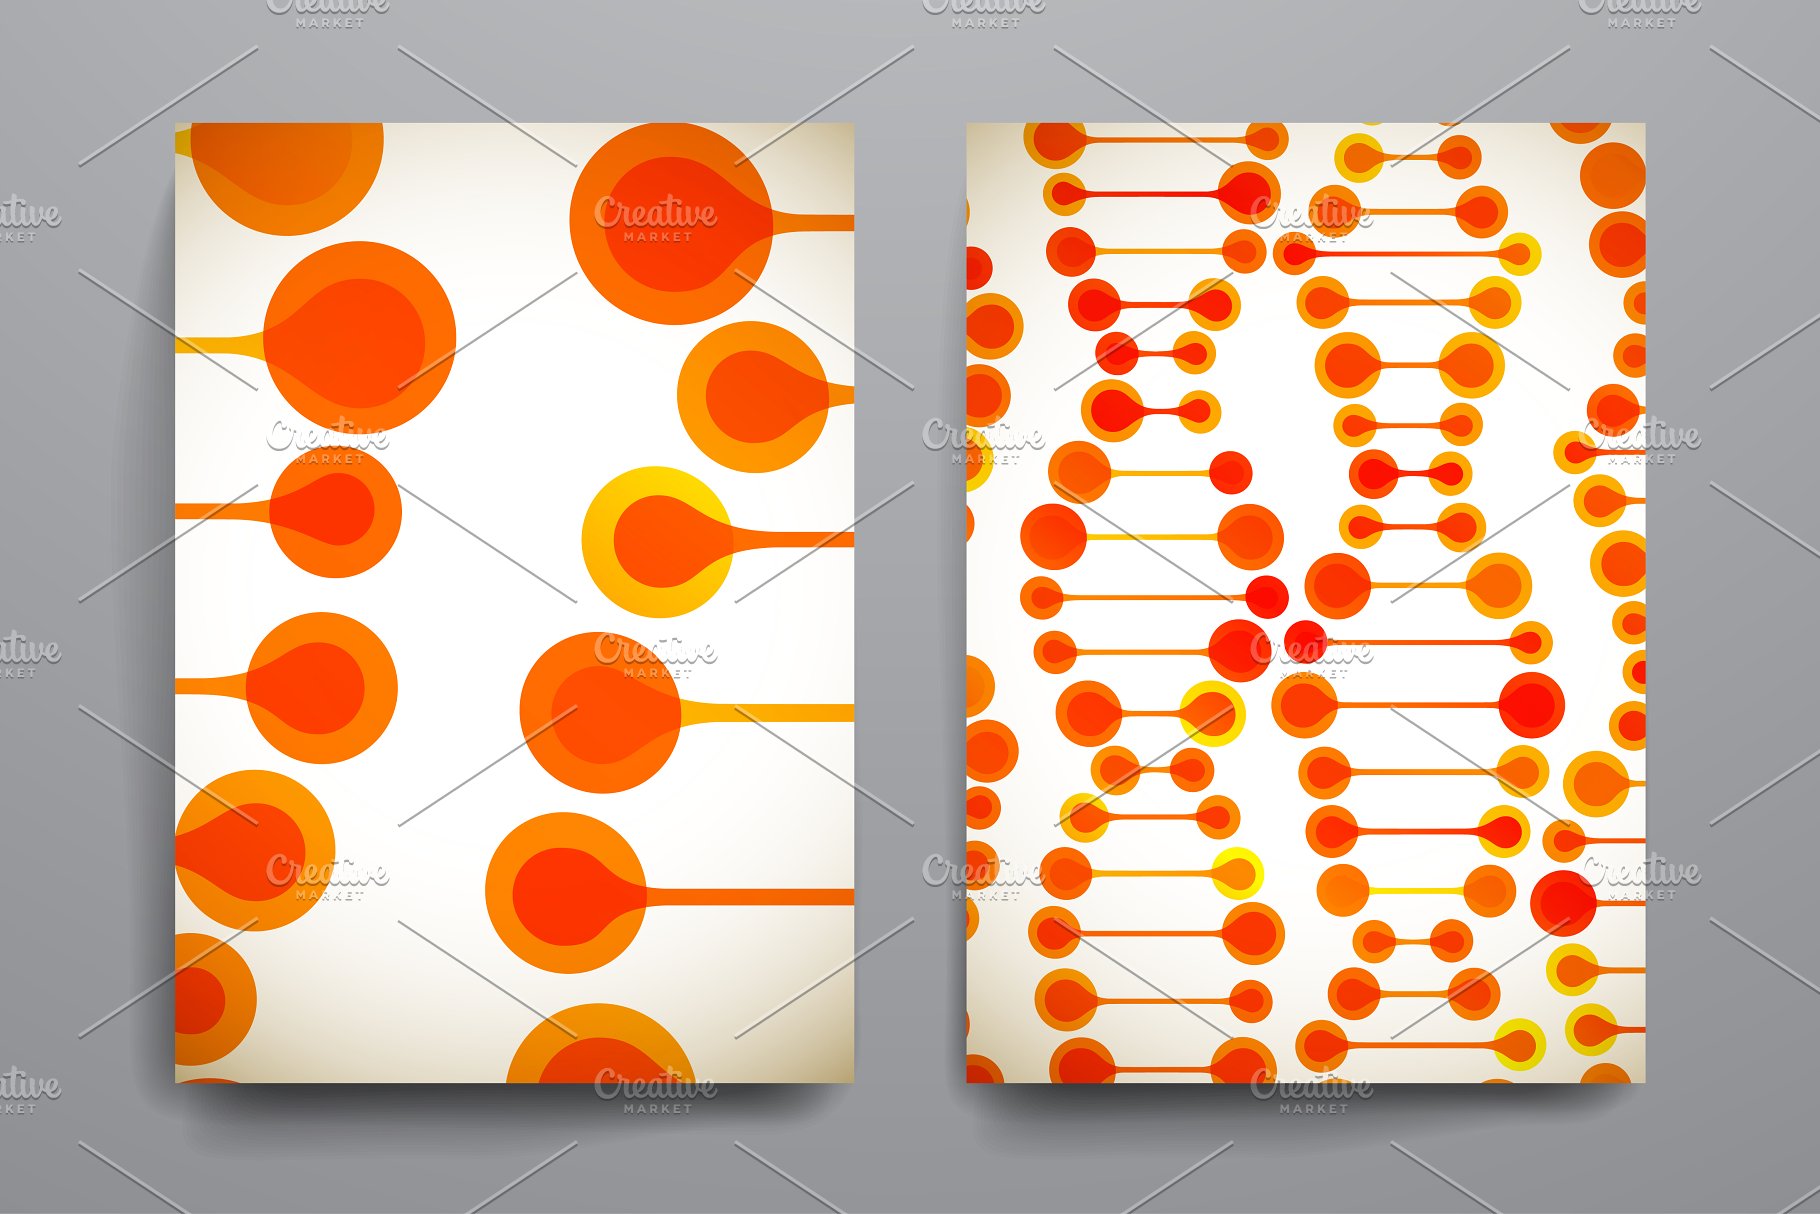 漂亮的DNA链条图形背景小册子模板 Beautiful brochures in DNA style.插图